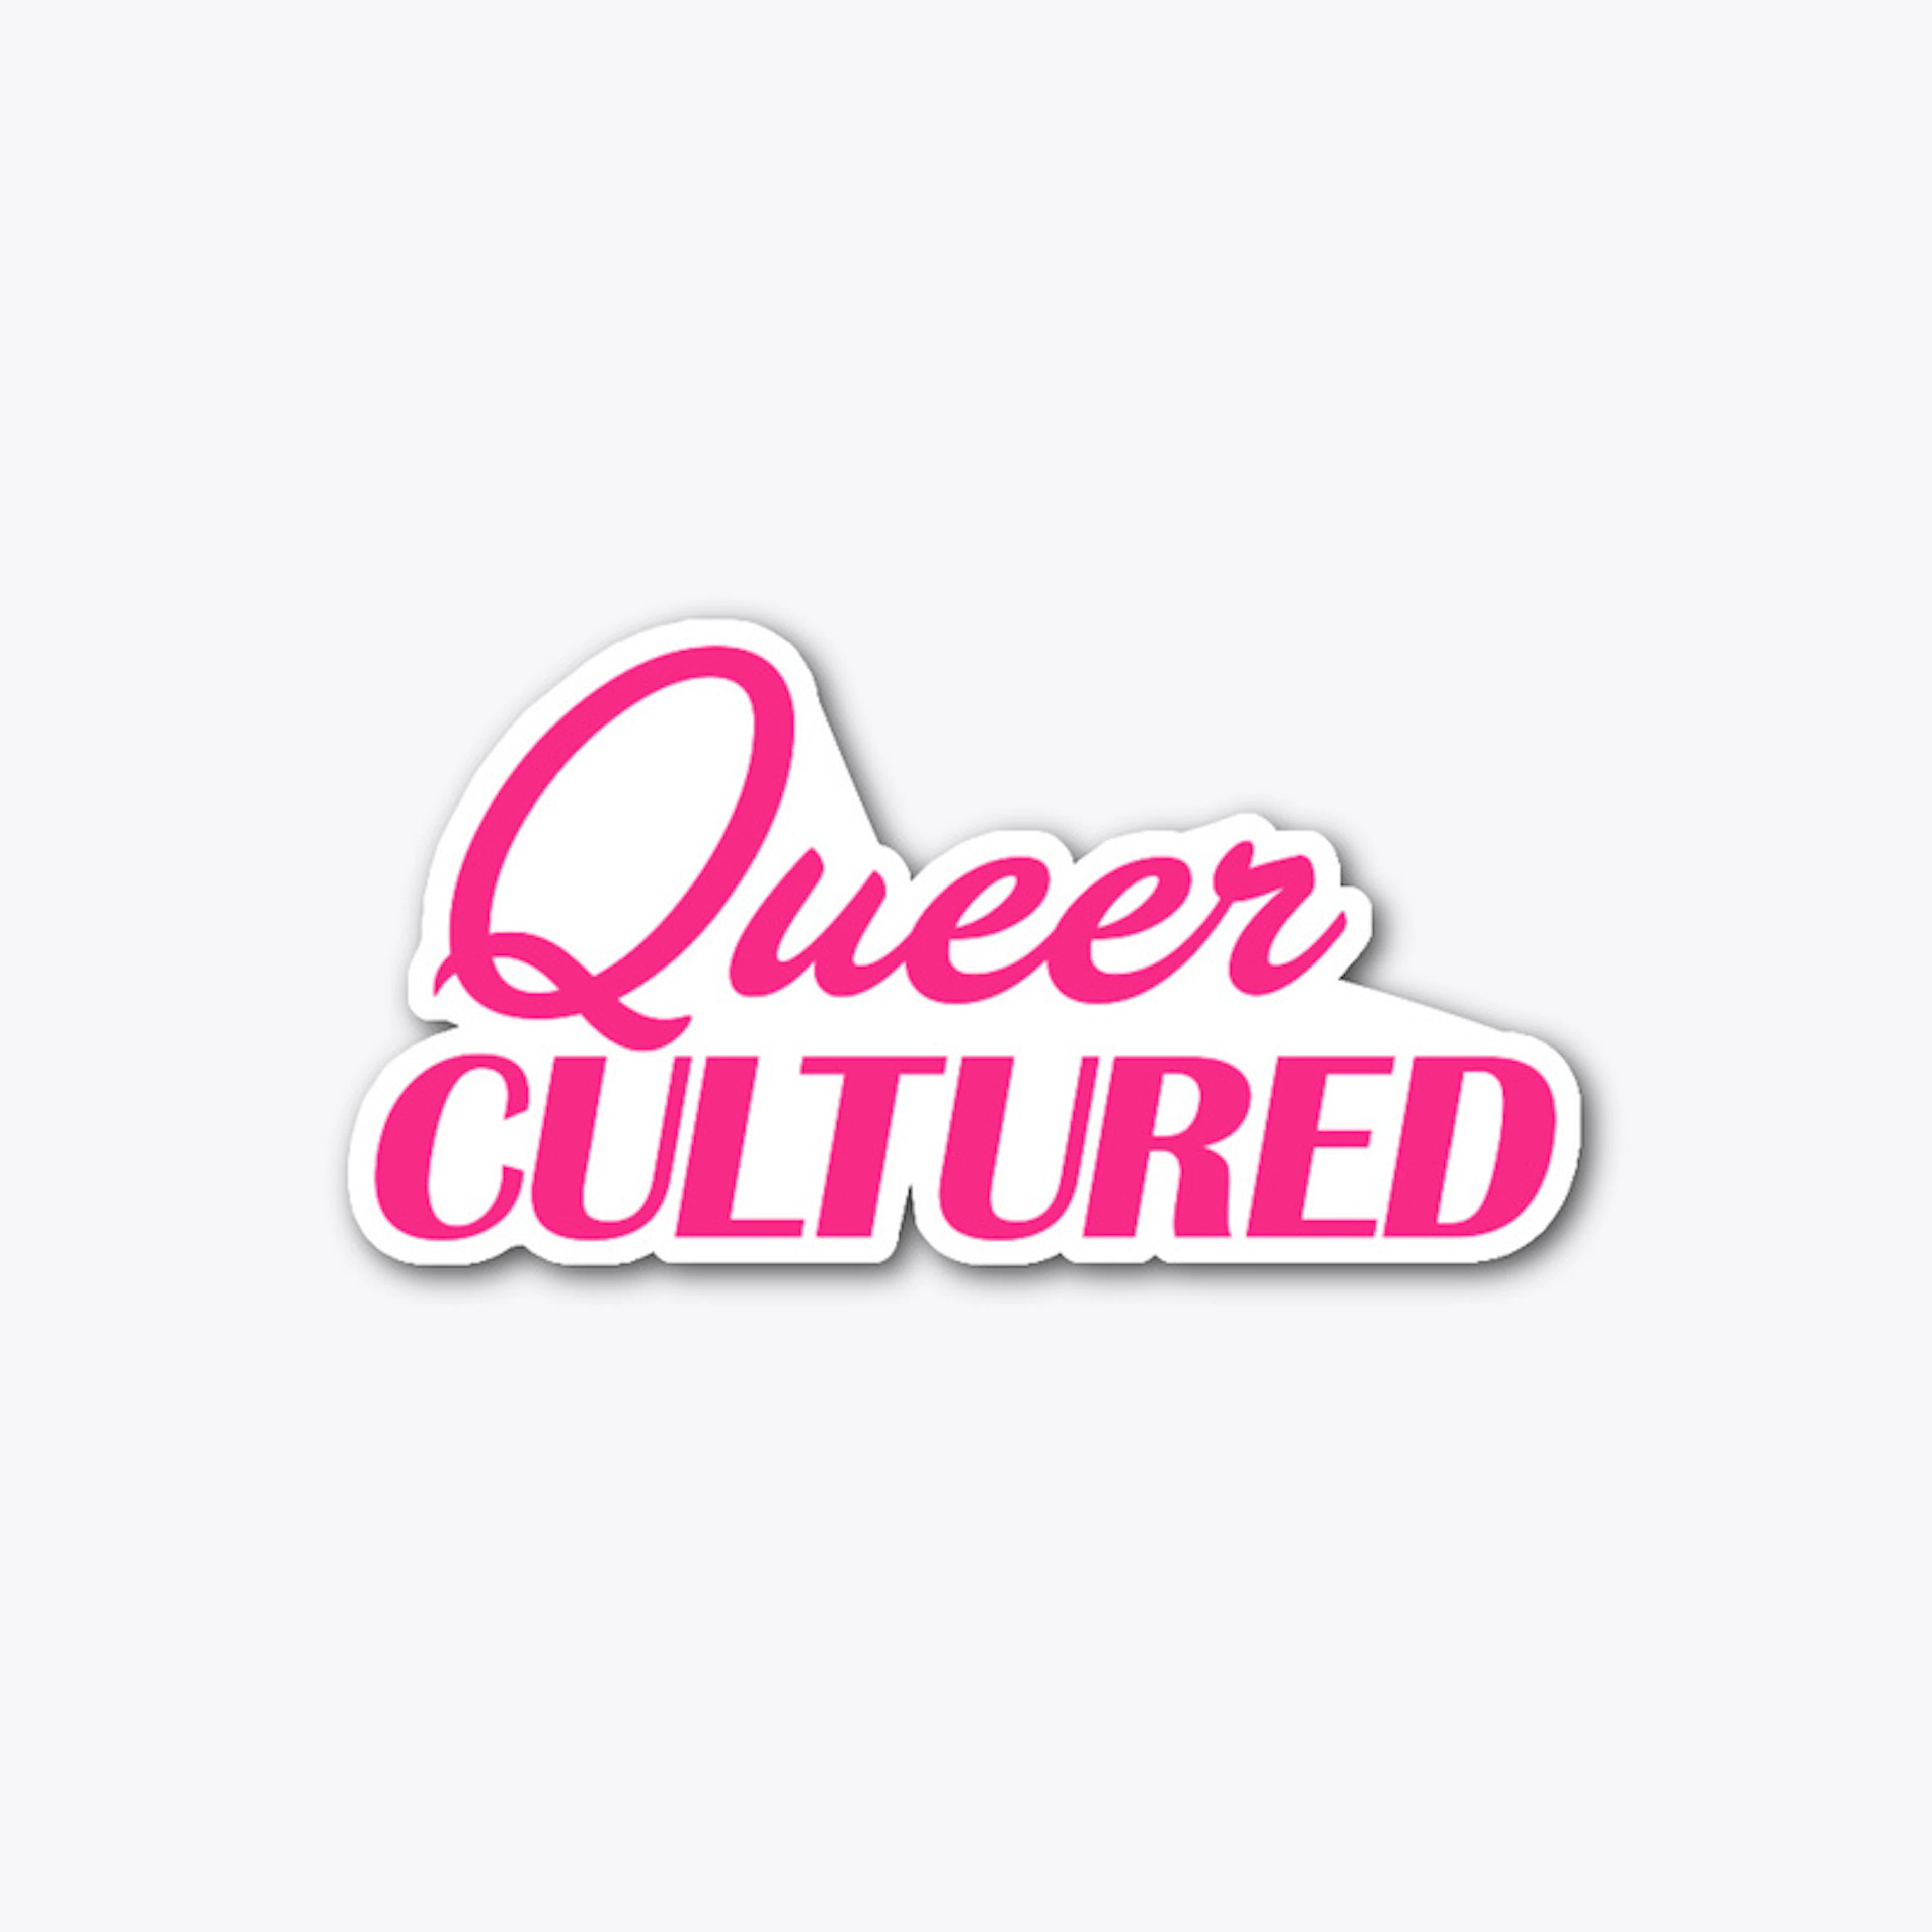 cultured sticker logo